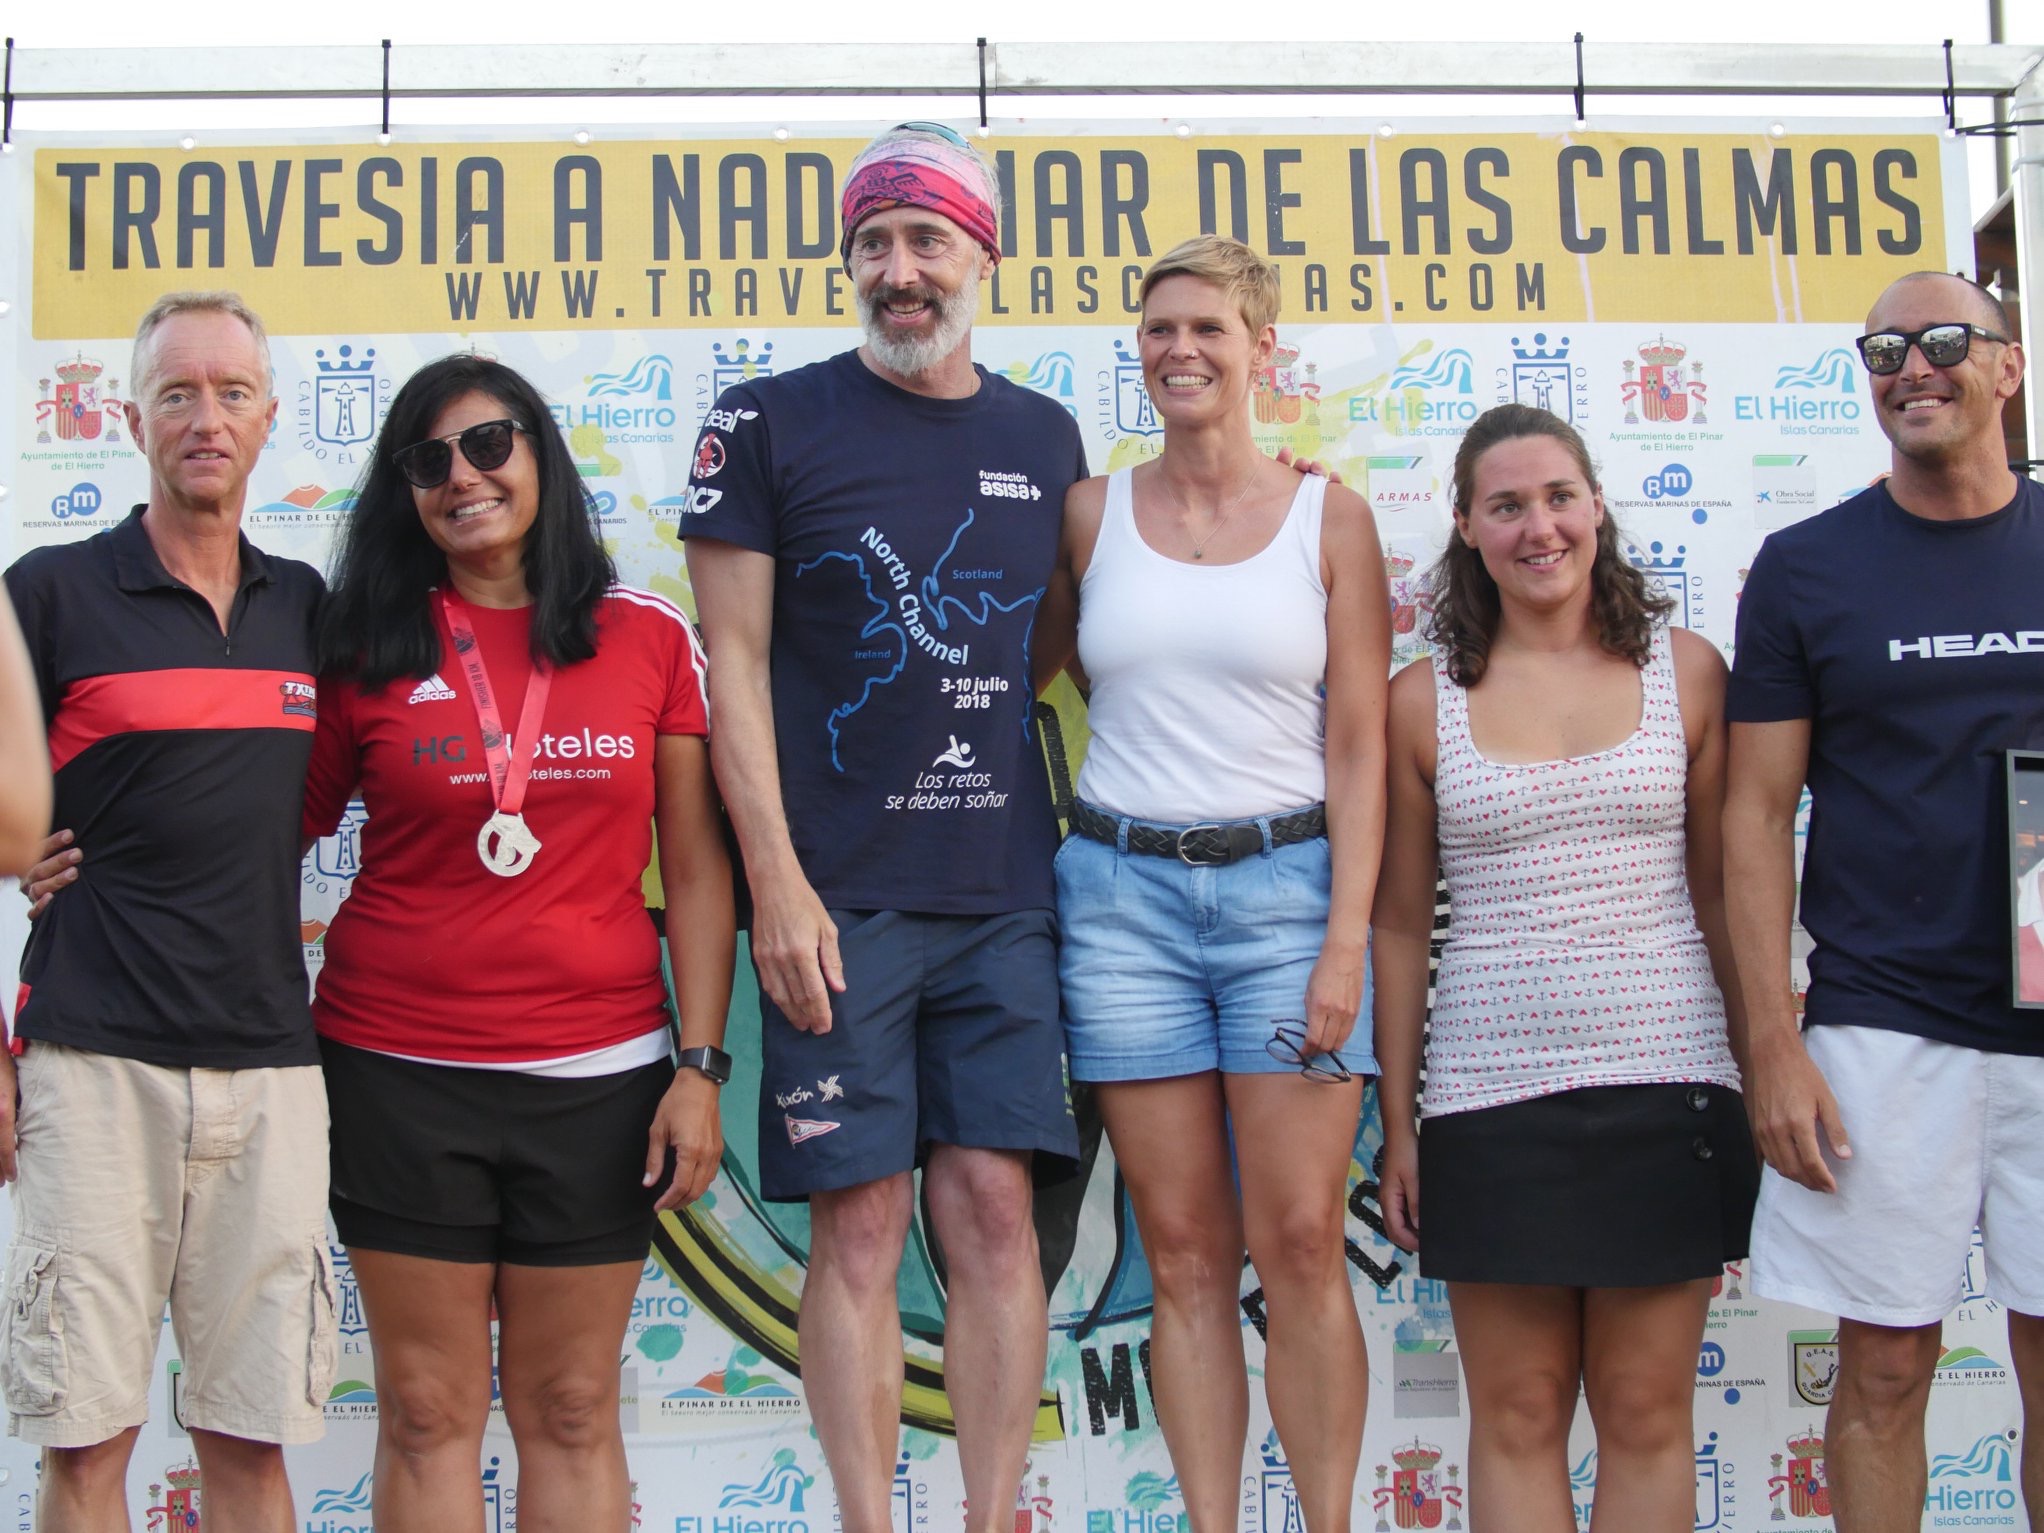 Juan Carlos Vallejo y Miriam Fegert triunfan en la Travesía Mar de Las Calmas 2018